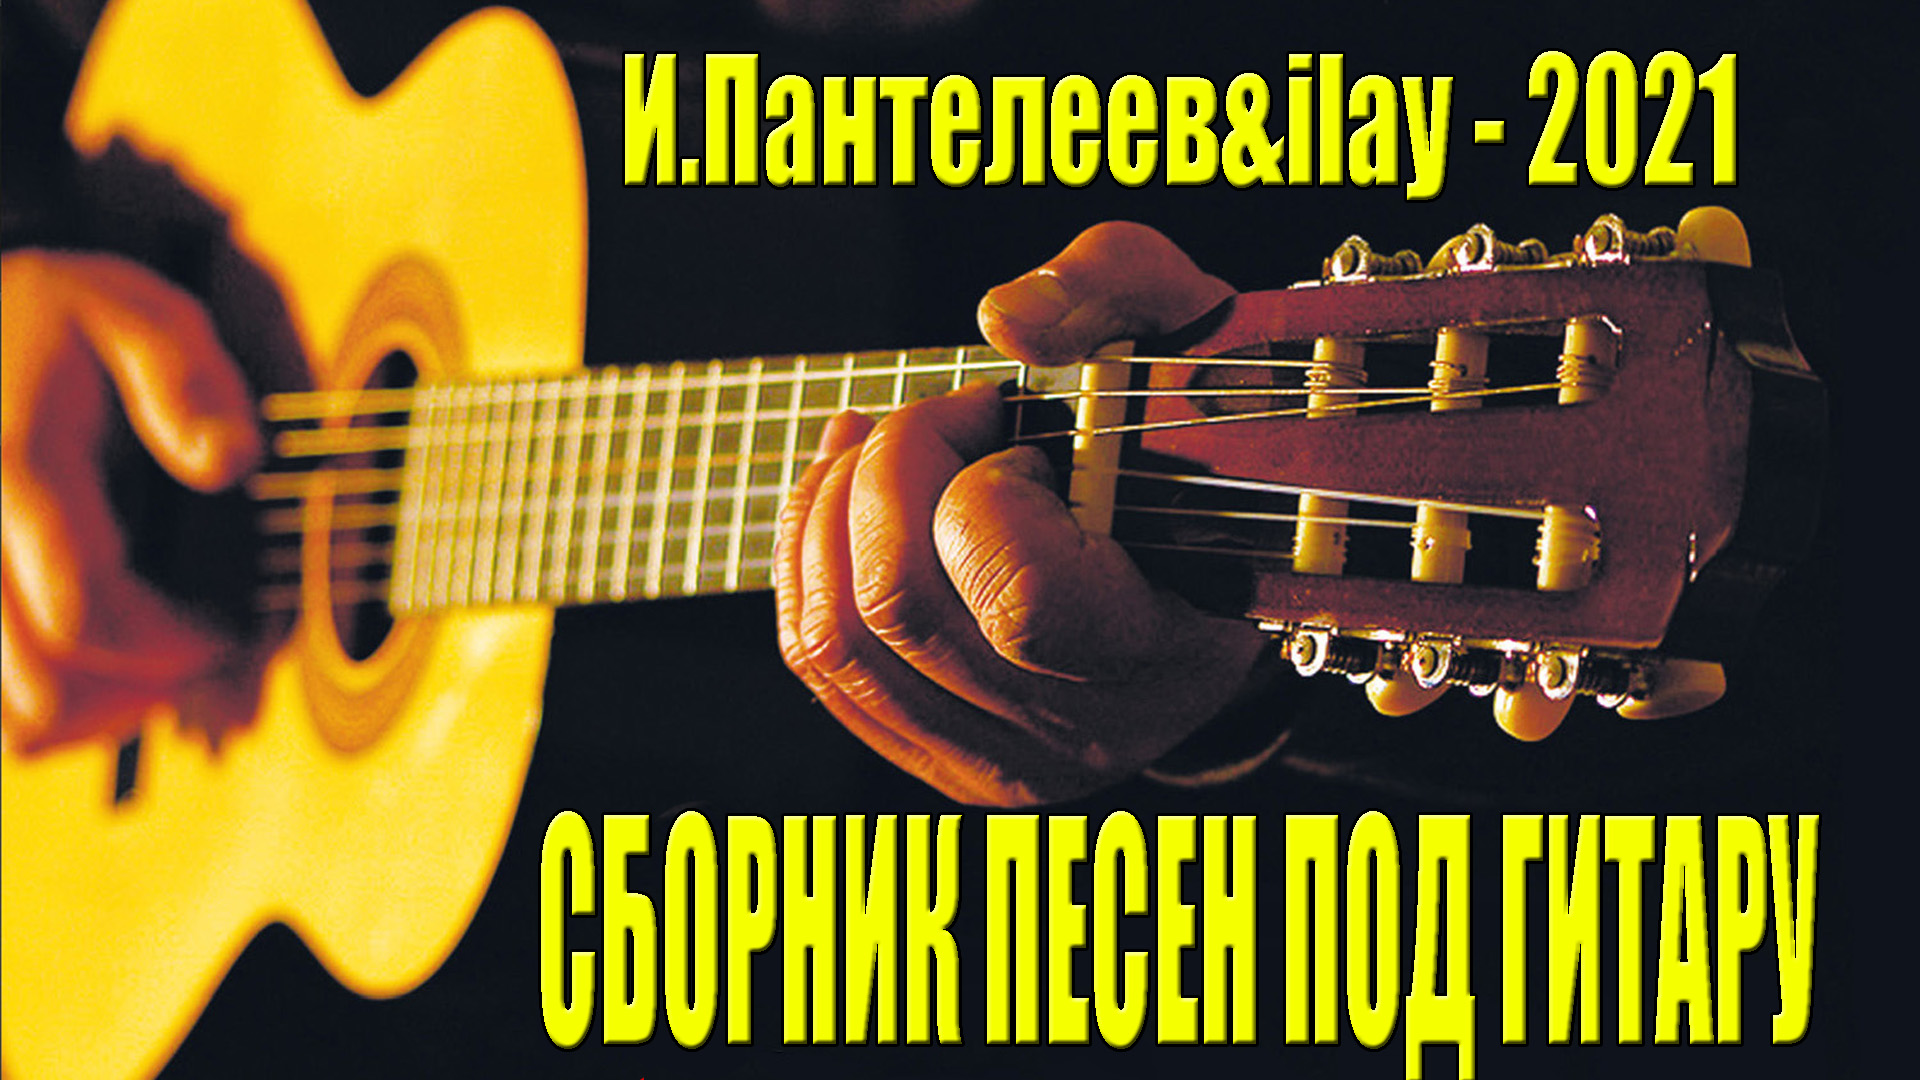 Сборник песен под гитару,  красивые песни под гитару, песни для души Игорь Пантелее и Илай Илимар